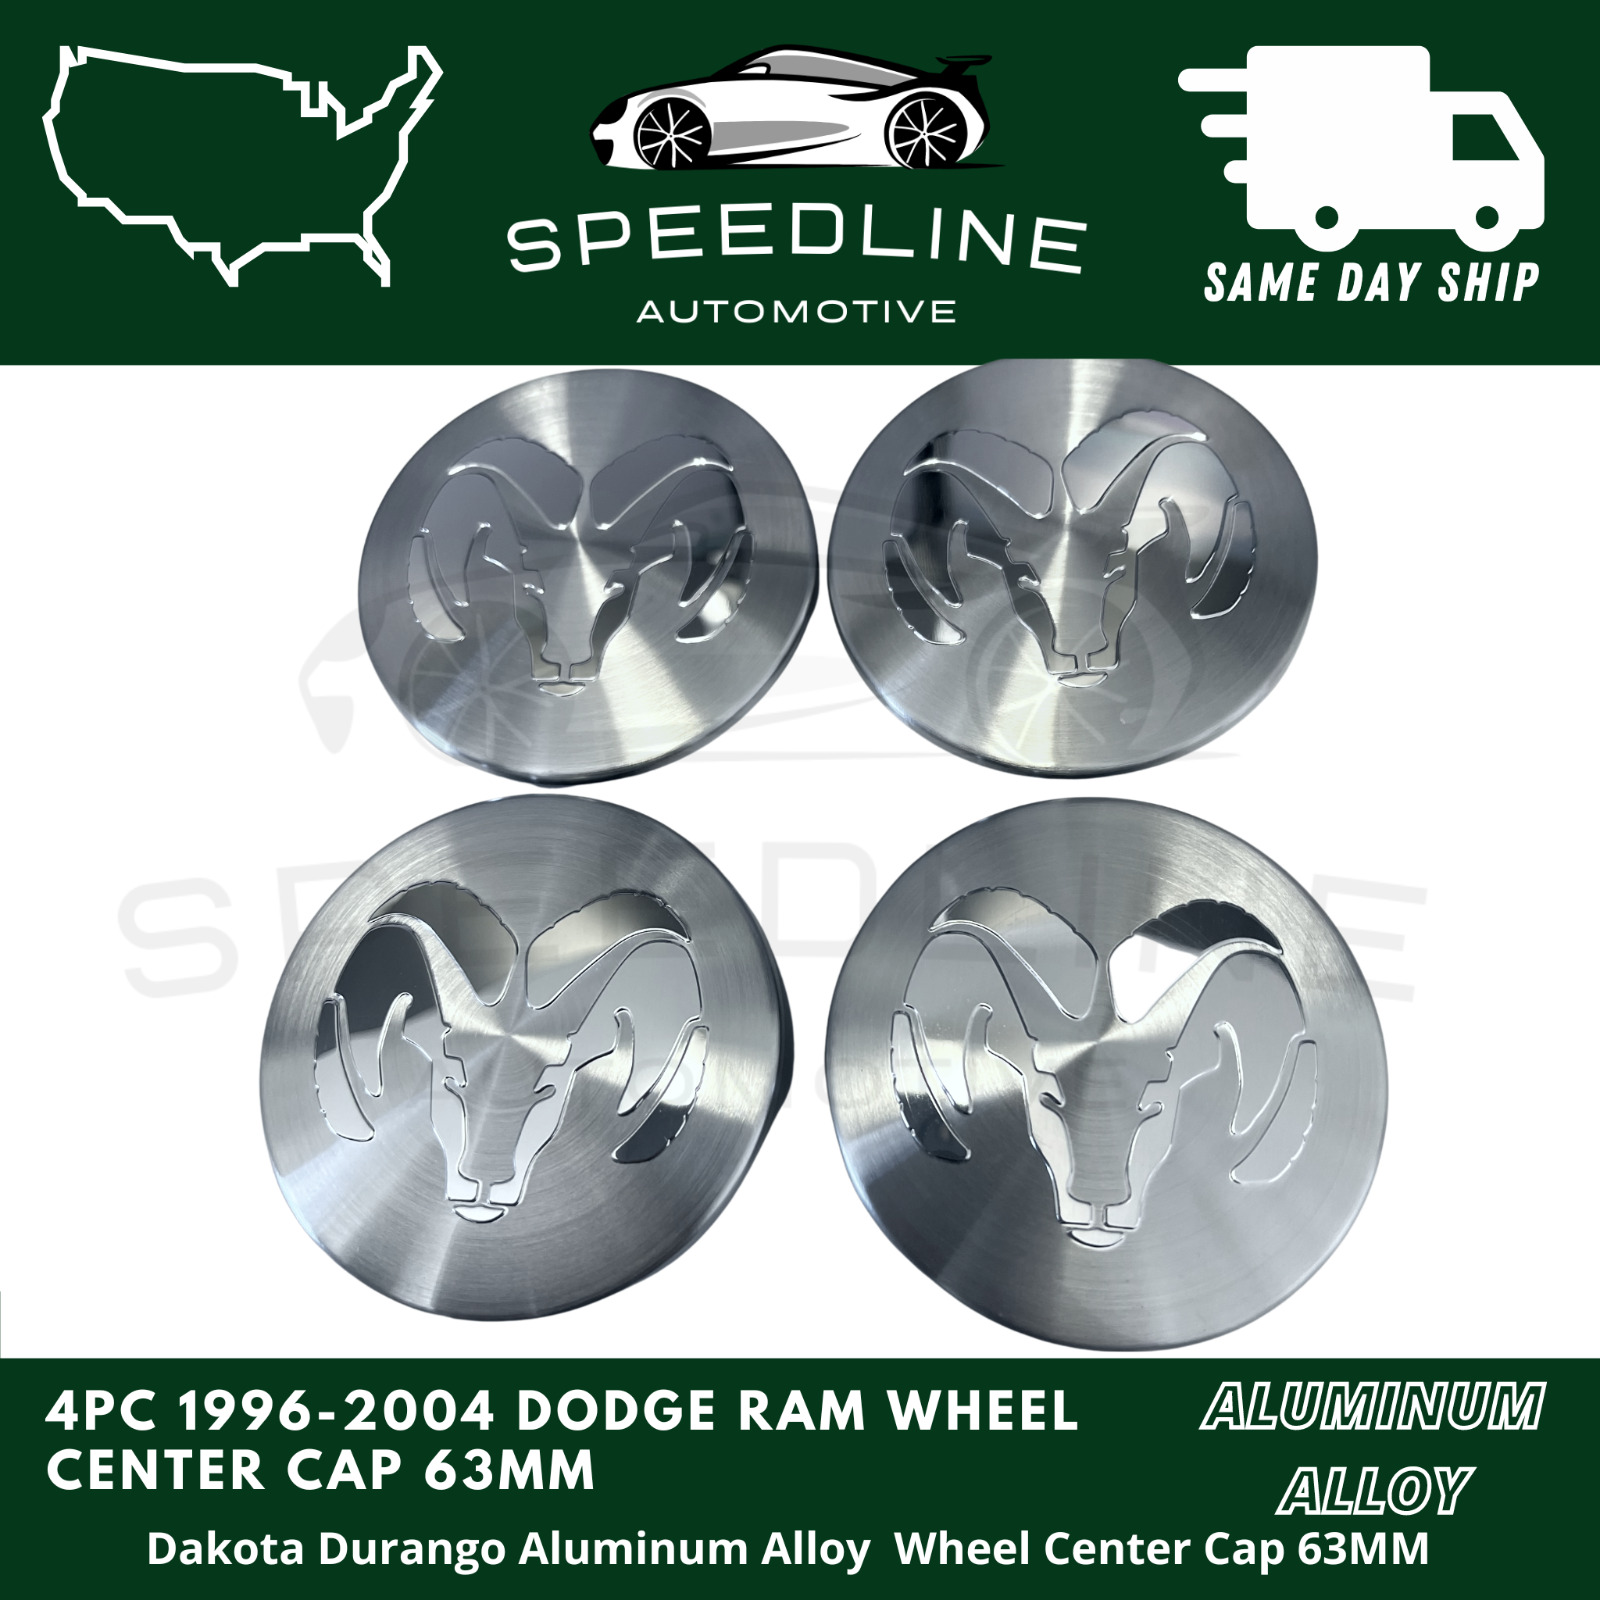 4PC 1996-2004 Dodge Ram Dakota Durango Aluminum Alloy Wheel Center Cap 63Mm